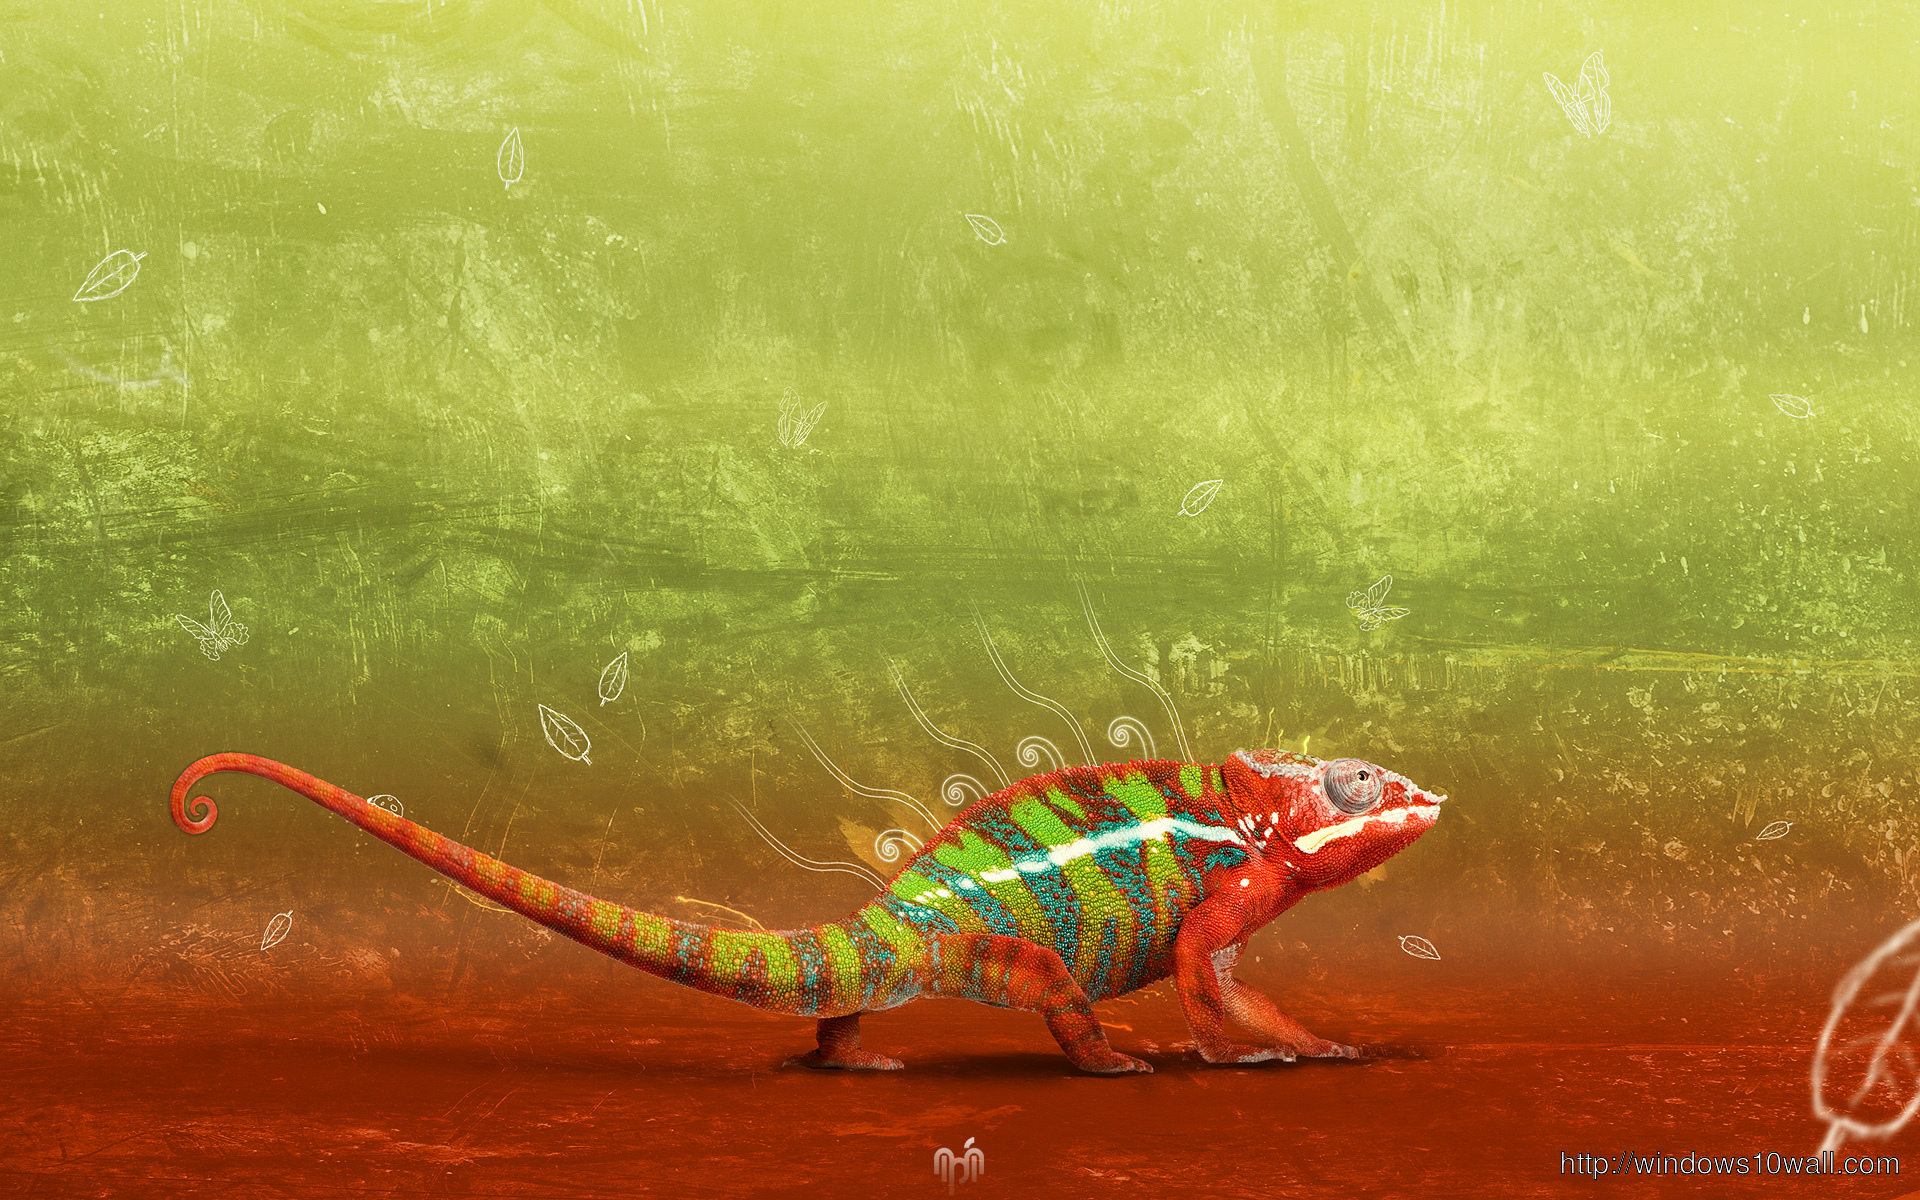 Chameleon Background Wallpaper